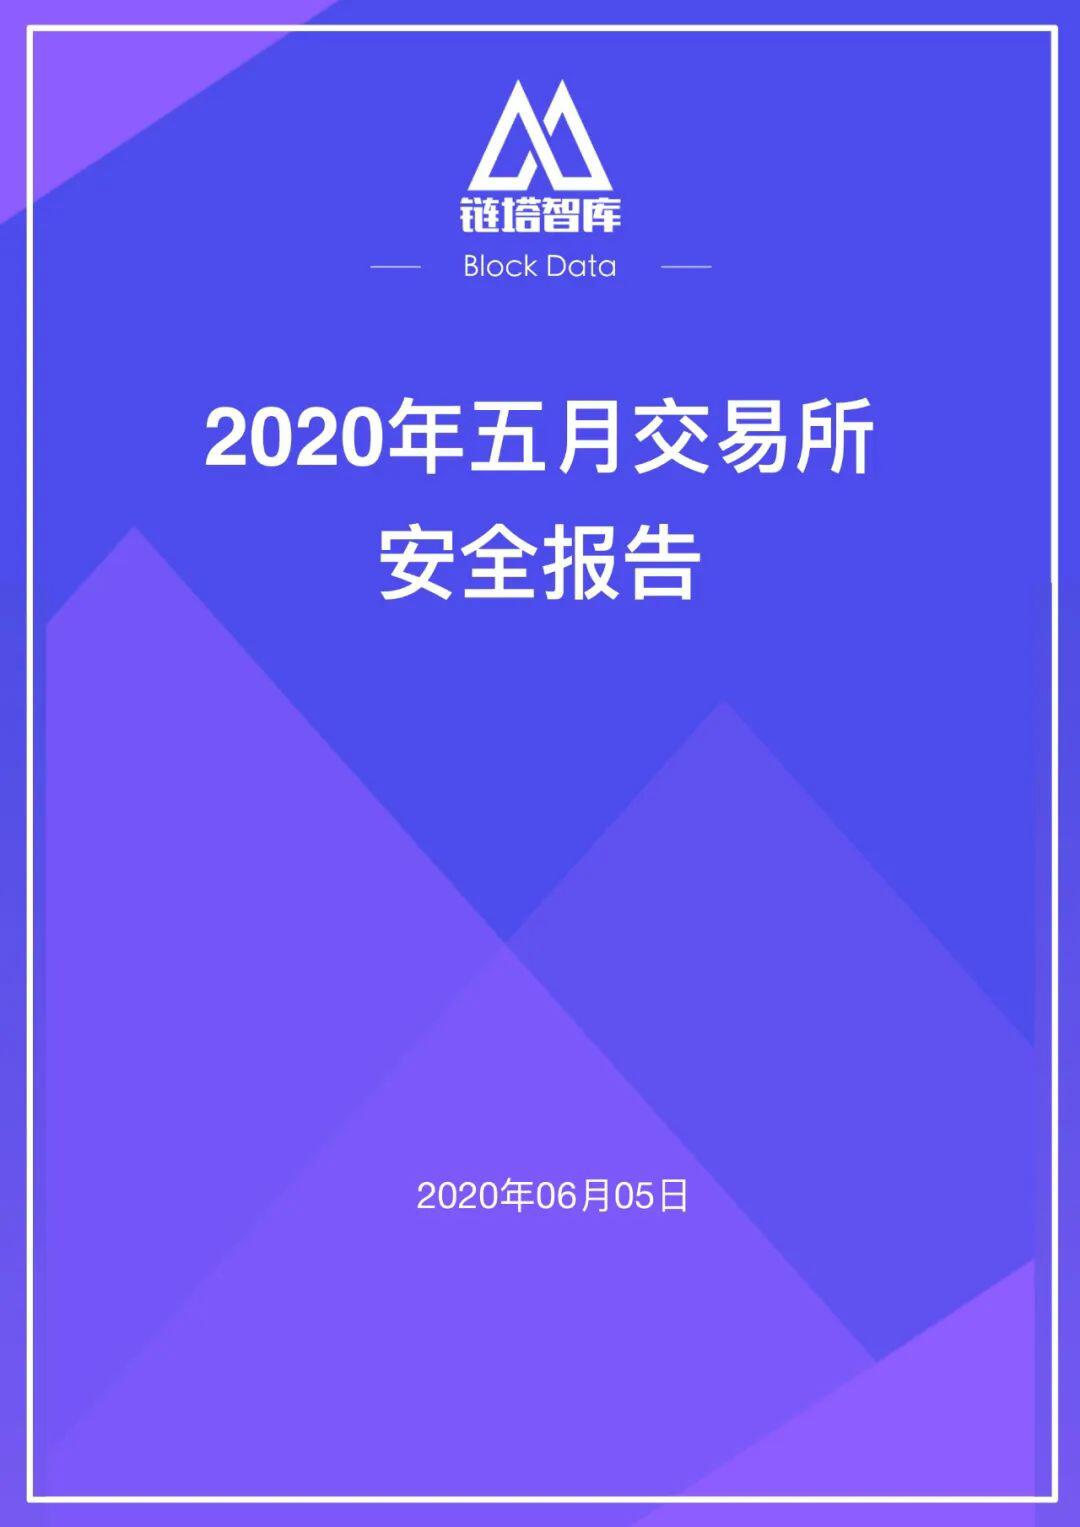 2020年五⽉交易所安全研报